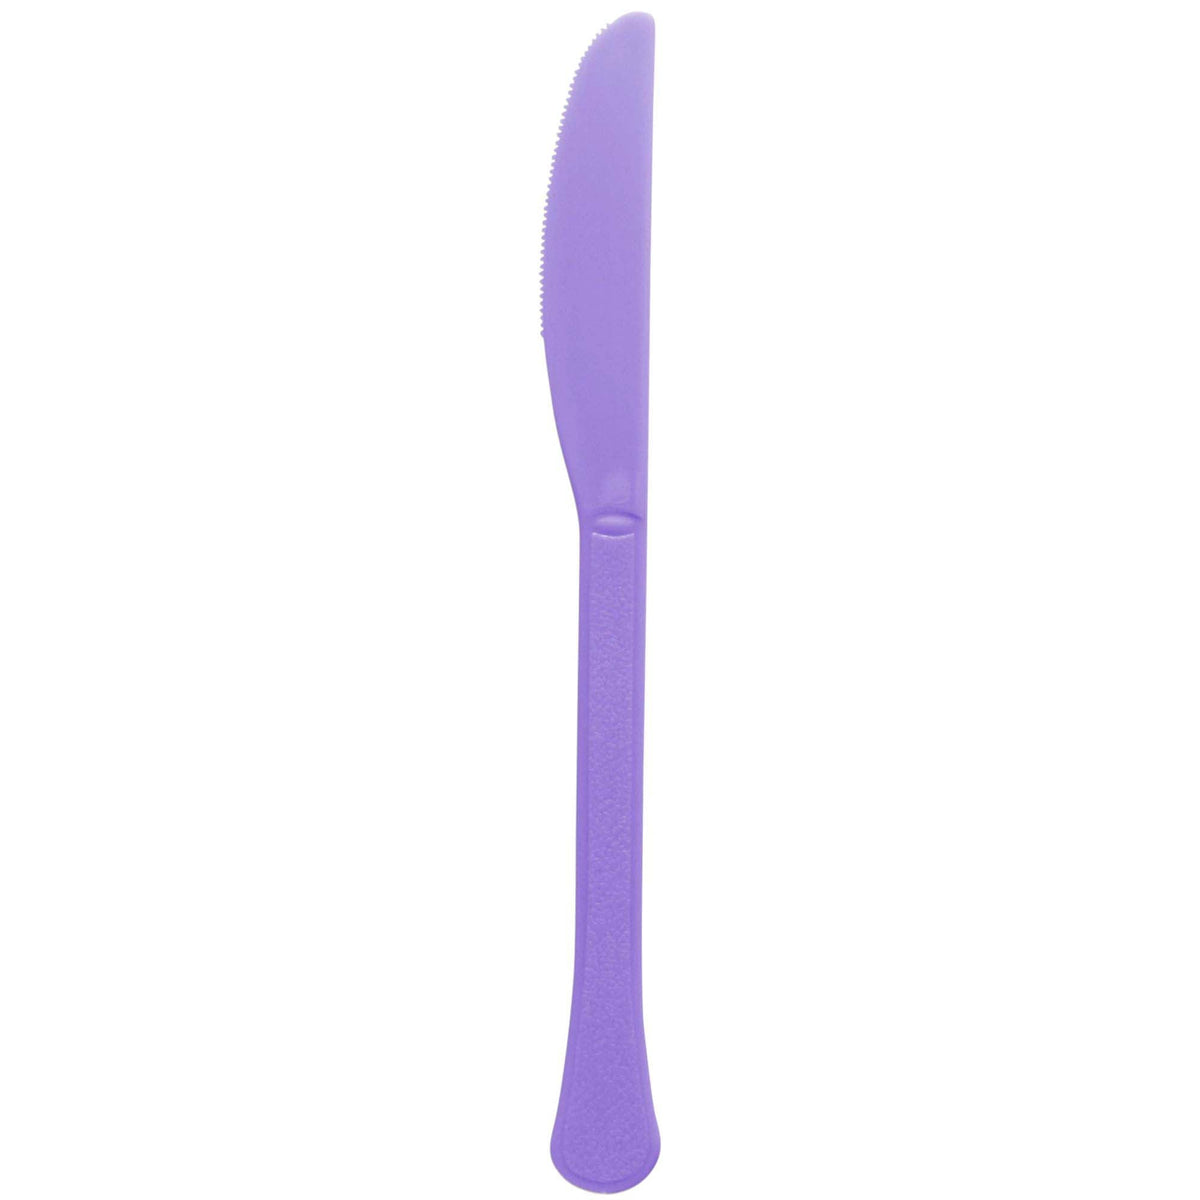 AMSCAN CA plasticware Purple Plastic Knives, 20 Count 192937250341